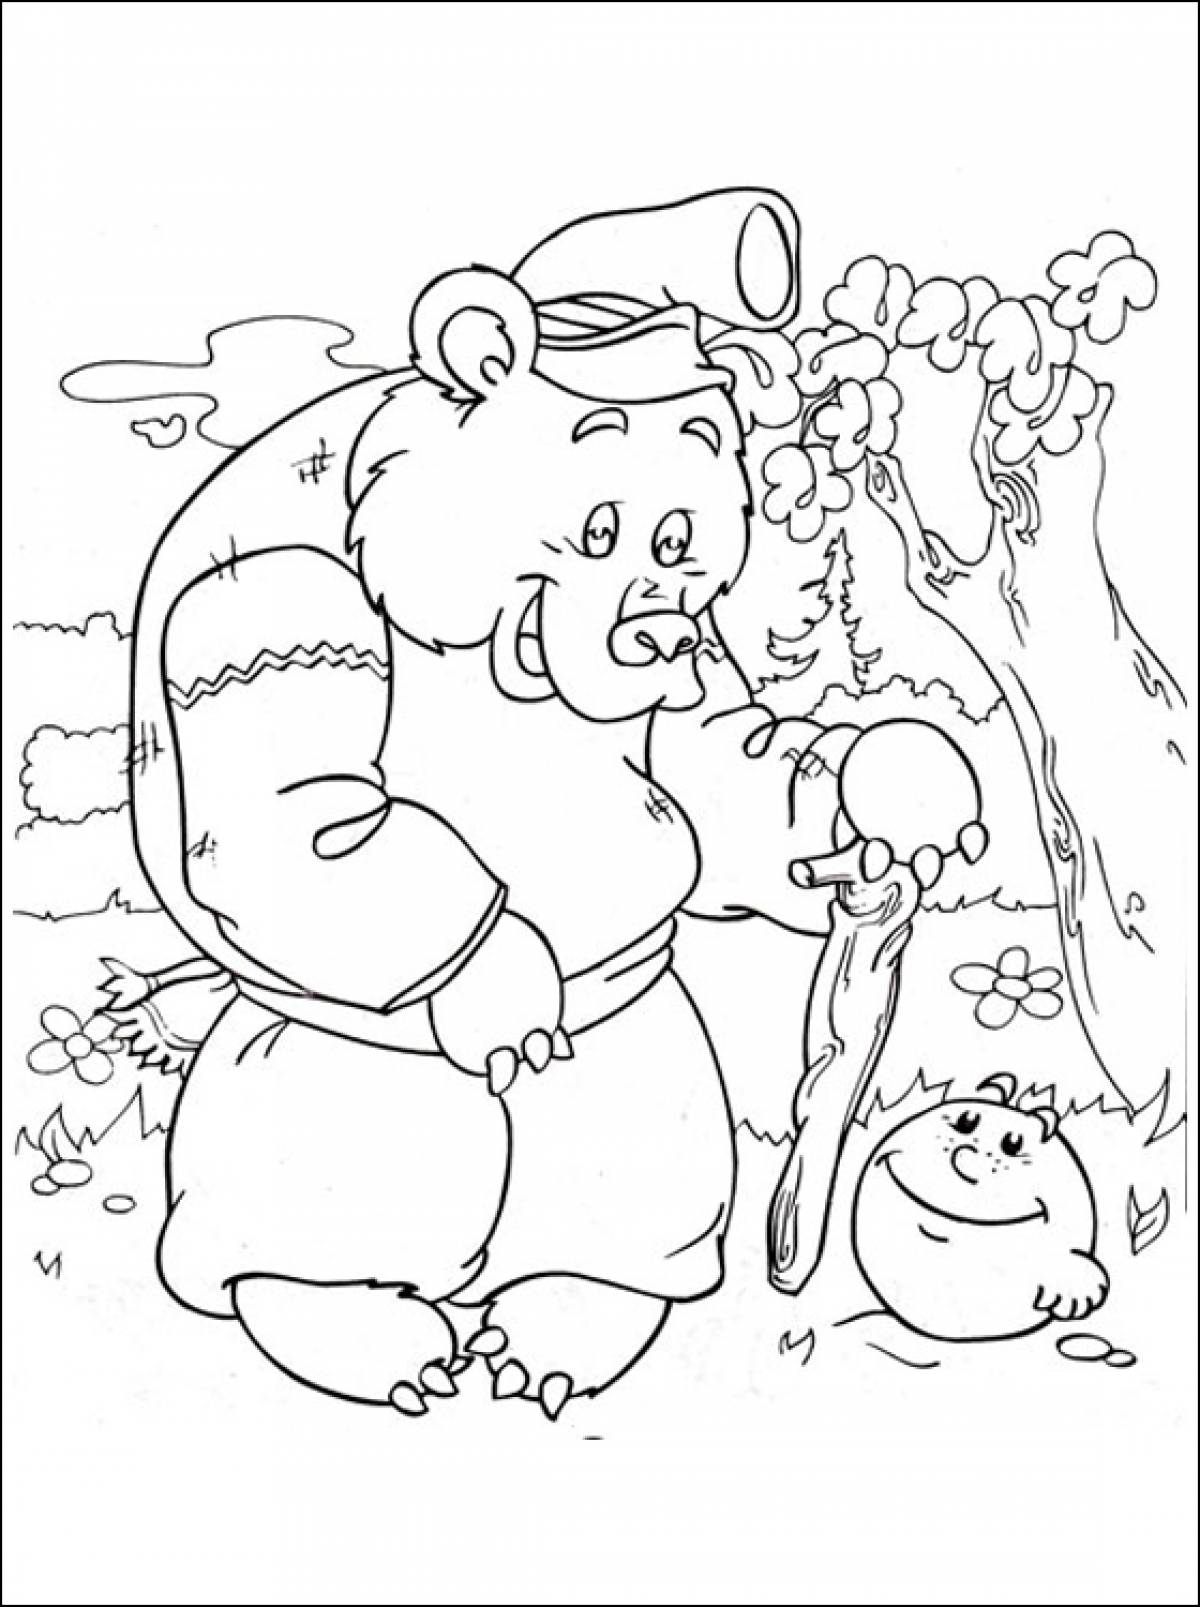 Медведь из колобка раскраска для детей